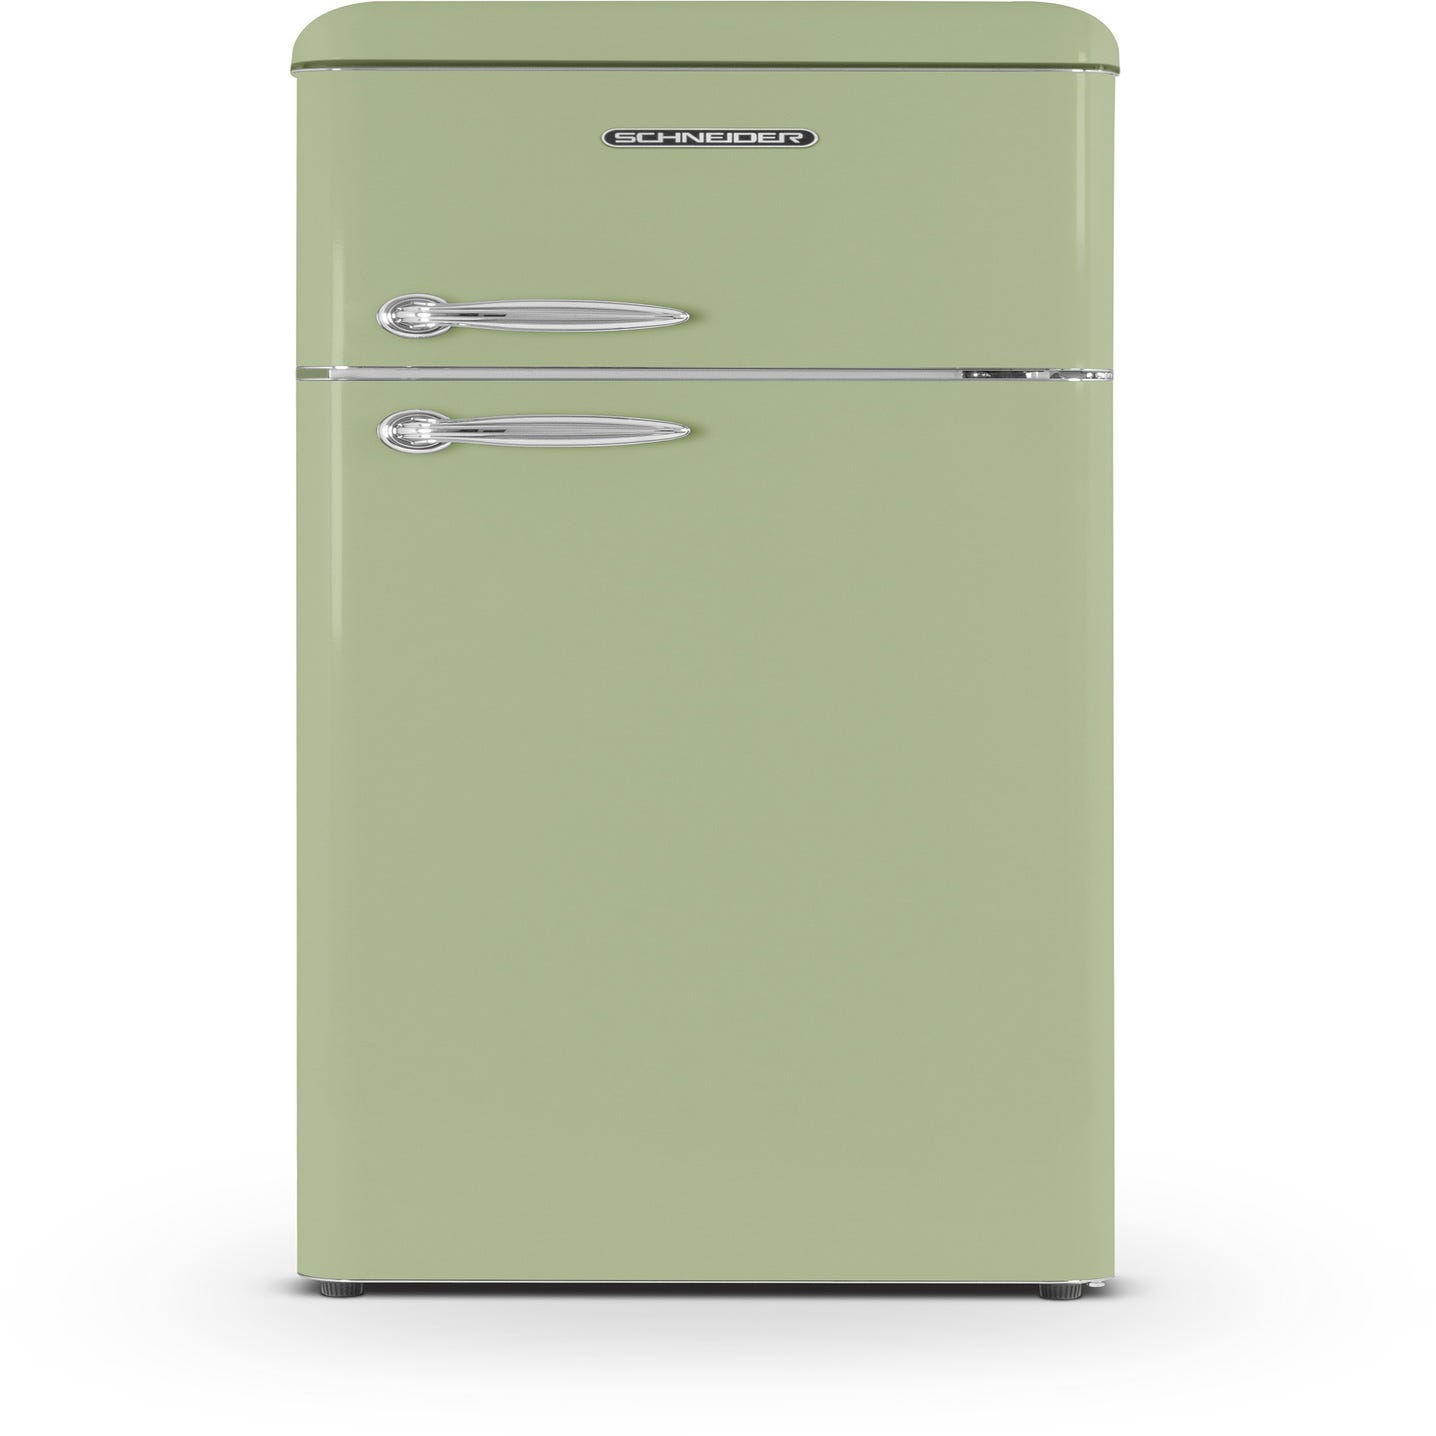 Comprar Refrigerador eléctrico con puerta cristal de 80 L al mejor precio